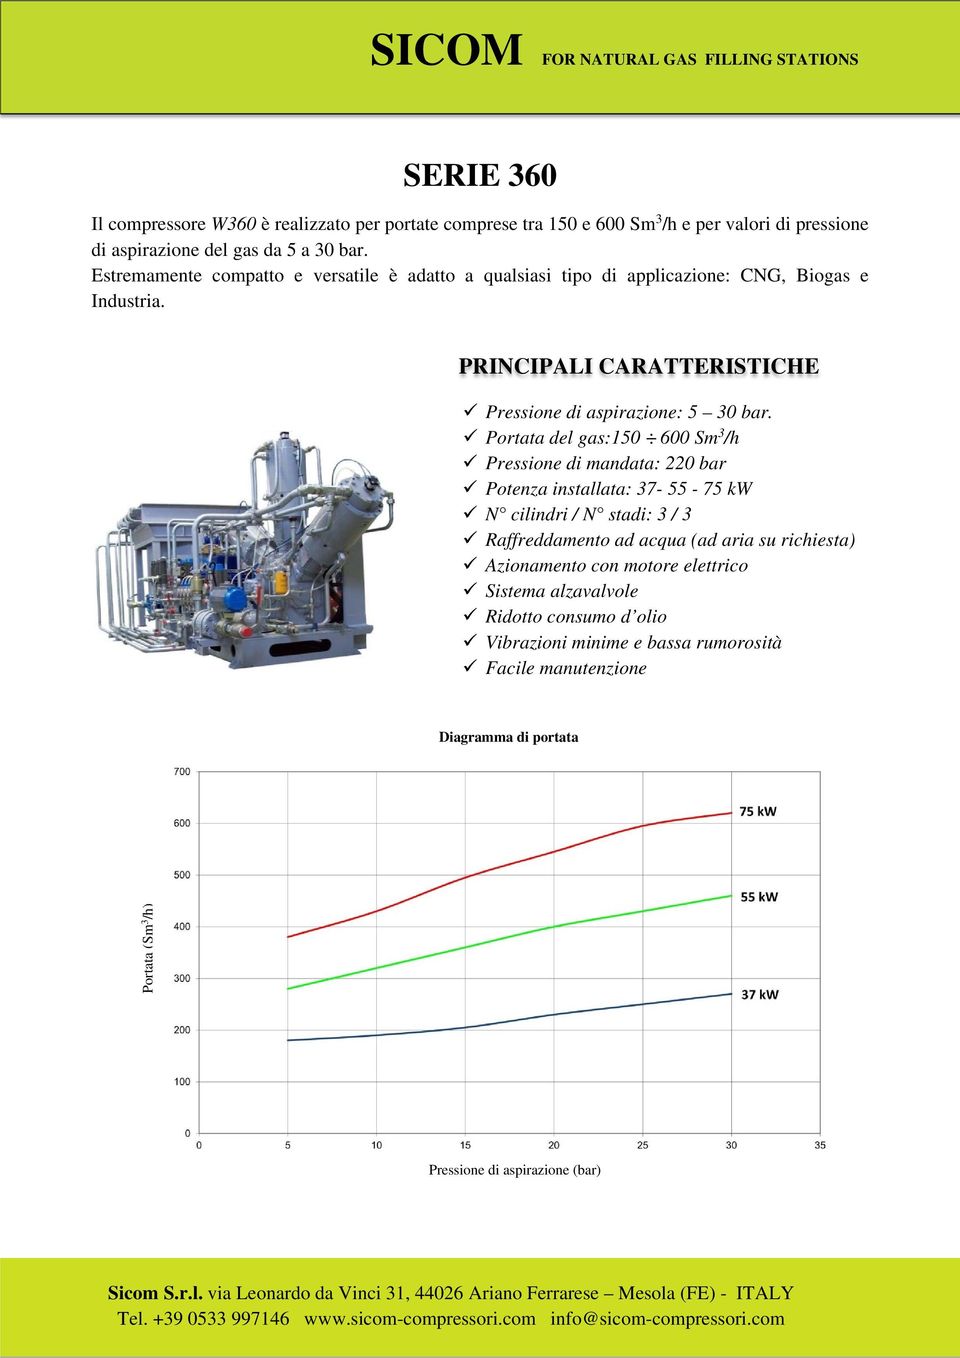 Portata del gas:150 600 Sm 3 /h Pressione di mandata: 220 bar Potenza installata: 37-55 - 75 kw N cilindri / N stadi: 3 / 3 Raffreddamento ad acqua (ad aria su